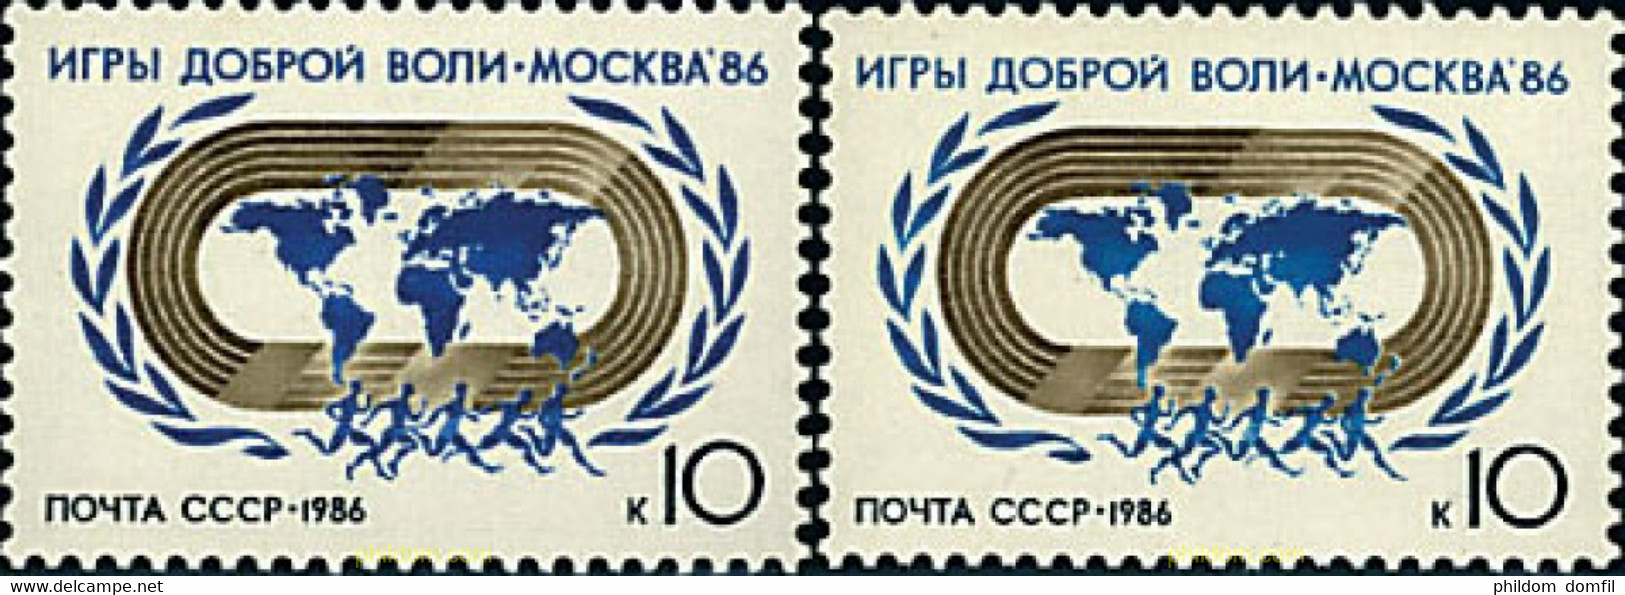 63501 MNH UNION SOVIETICA 1986 JUEGOS DEPORTIVOS INTERNACIONALES DE LA BUENA VOLUNTAD - Colecciones